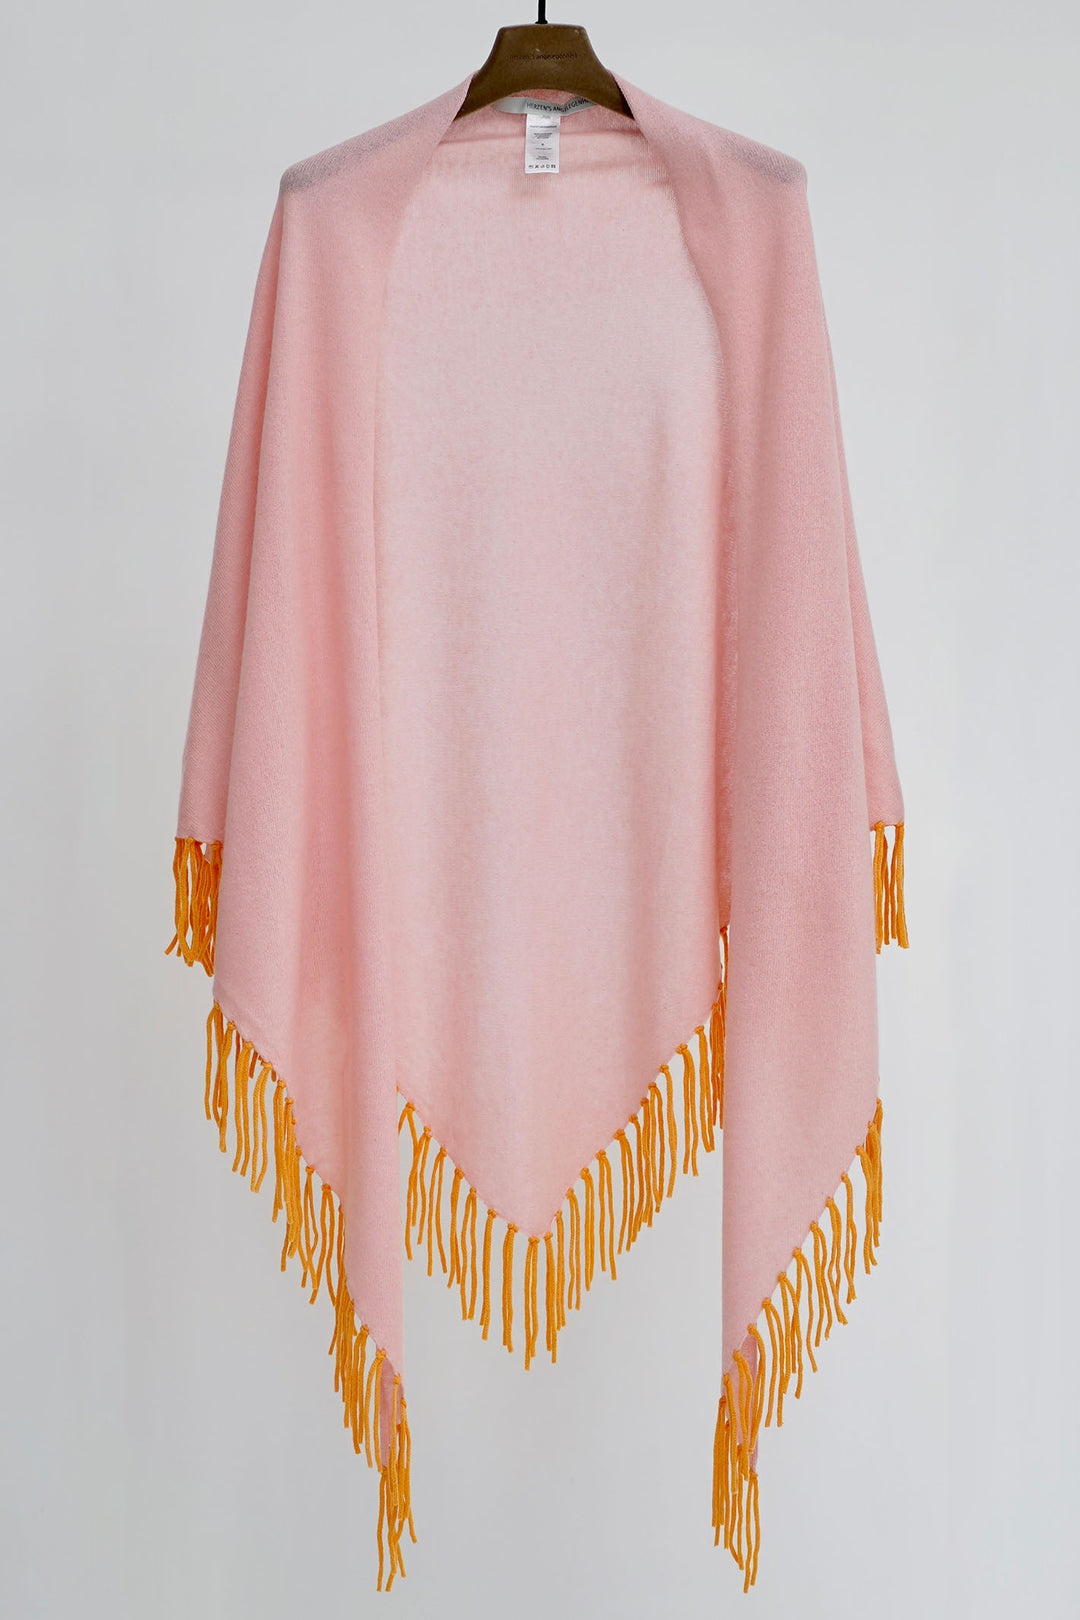 Herzen's Angelegenheit 5000-241-630652 Shrimp Tuscany Pink Shawl - Olivia Grace Fashion